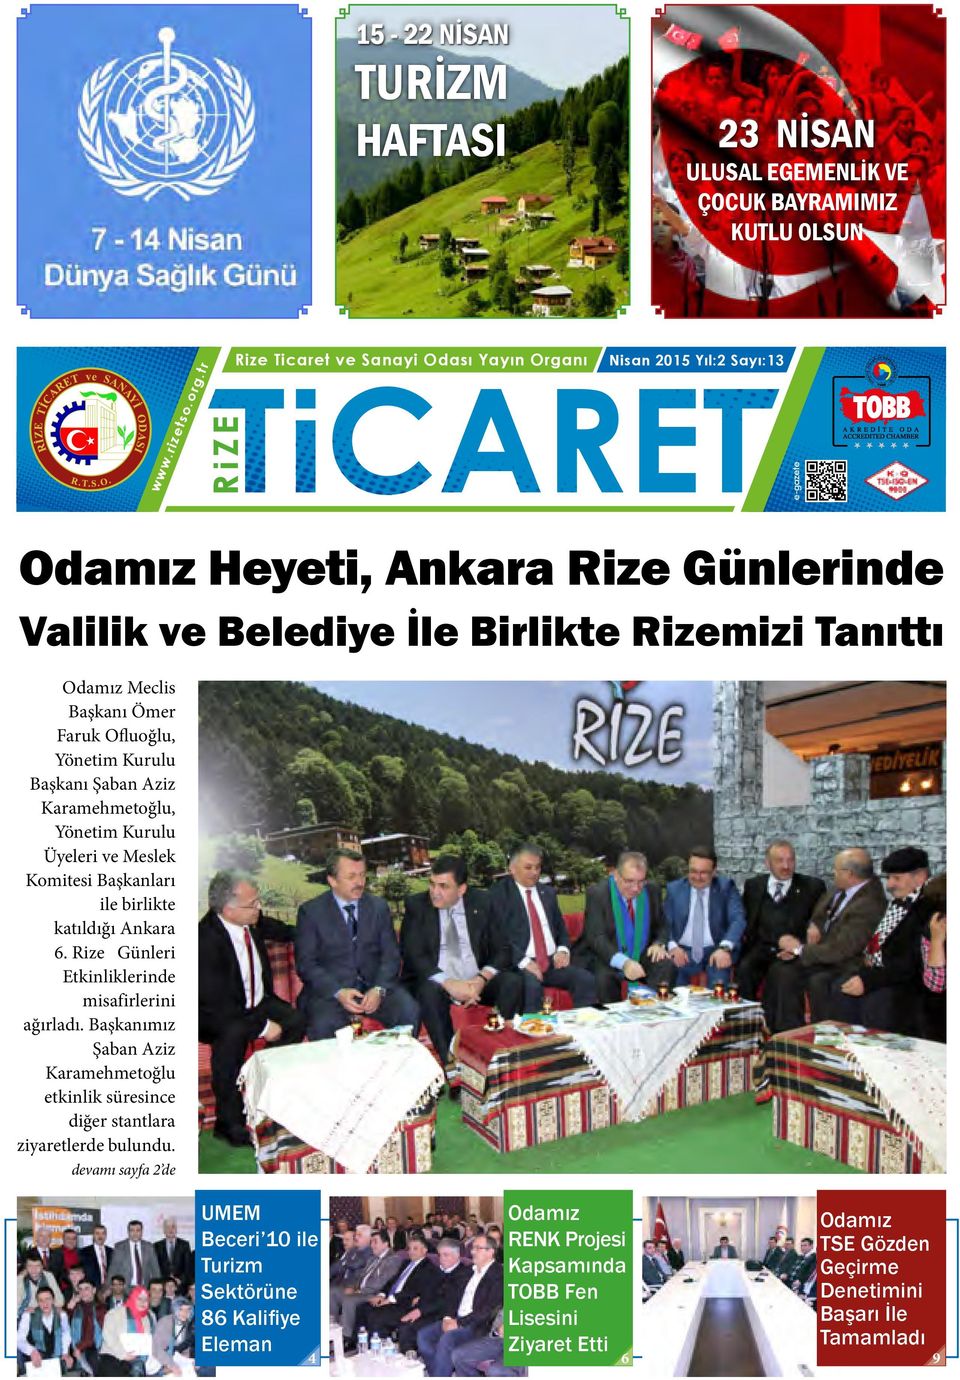 Komitesi Başkanları ile birlikte katıldığı Ankara 6. Rize Günleri Etkinliklerinde misafirlerini ağırladı.